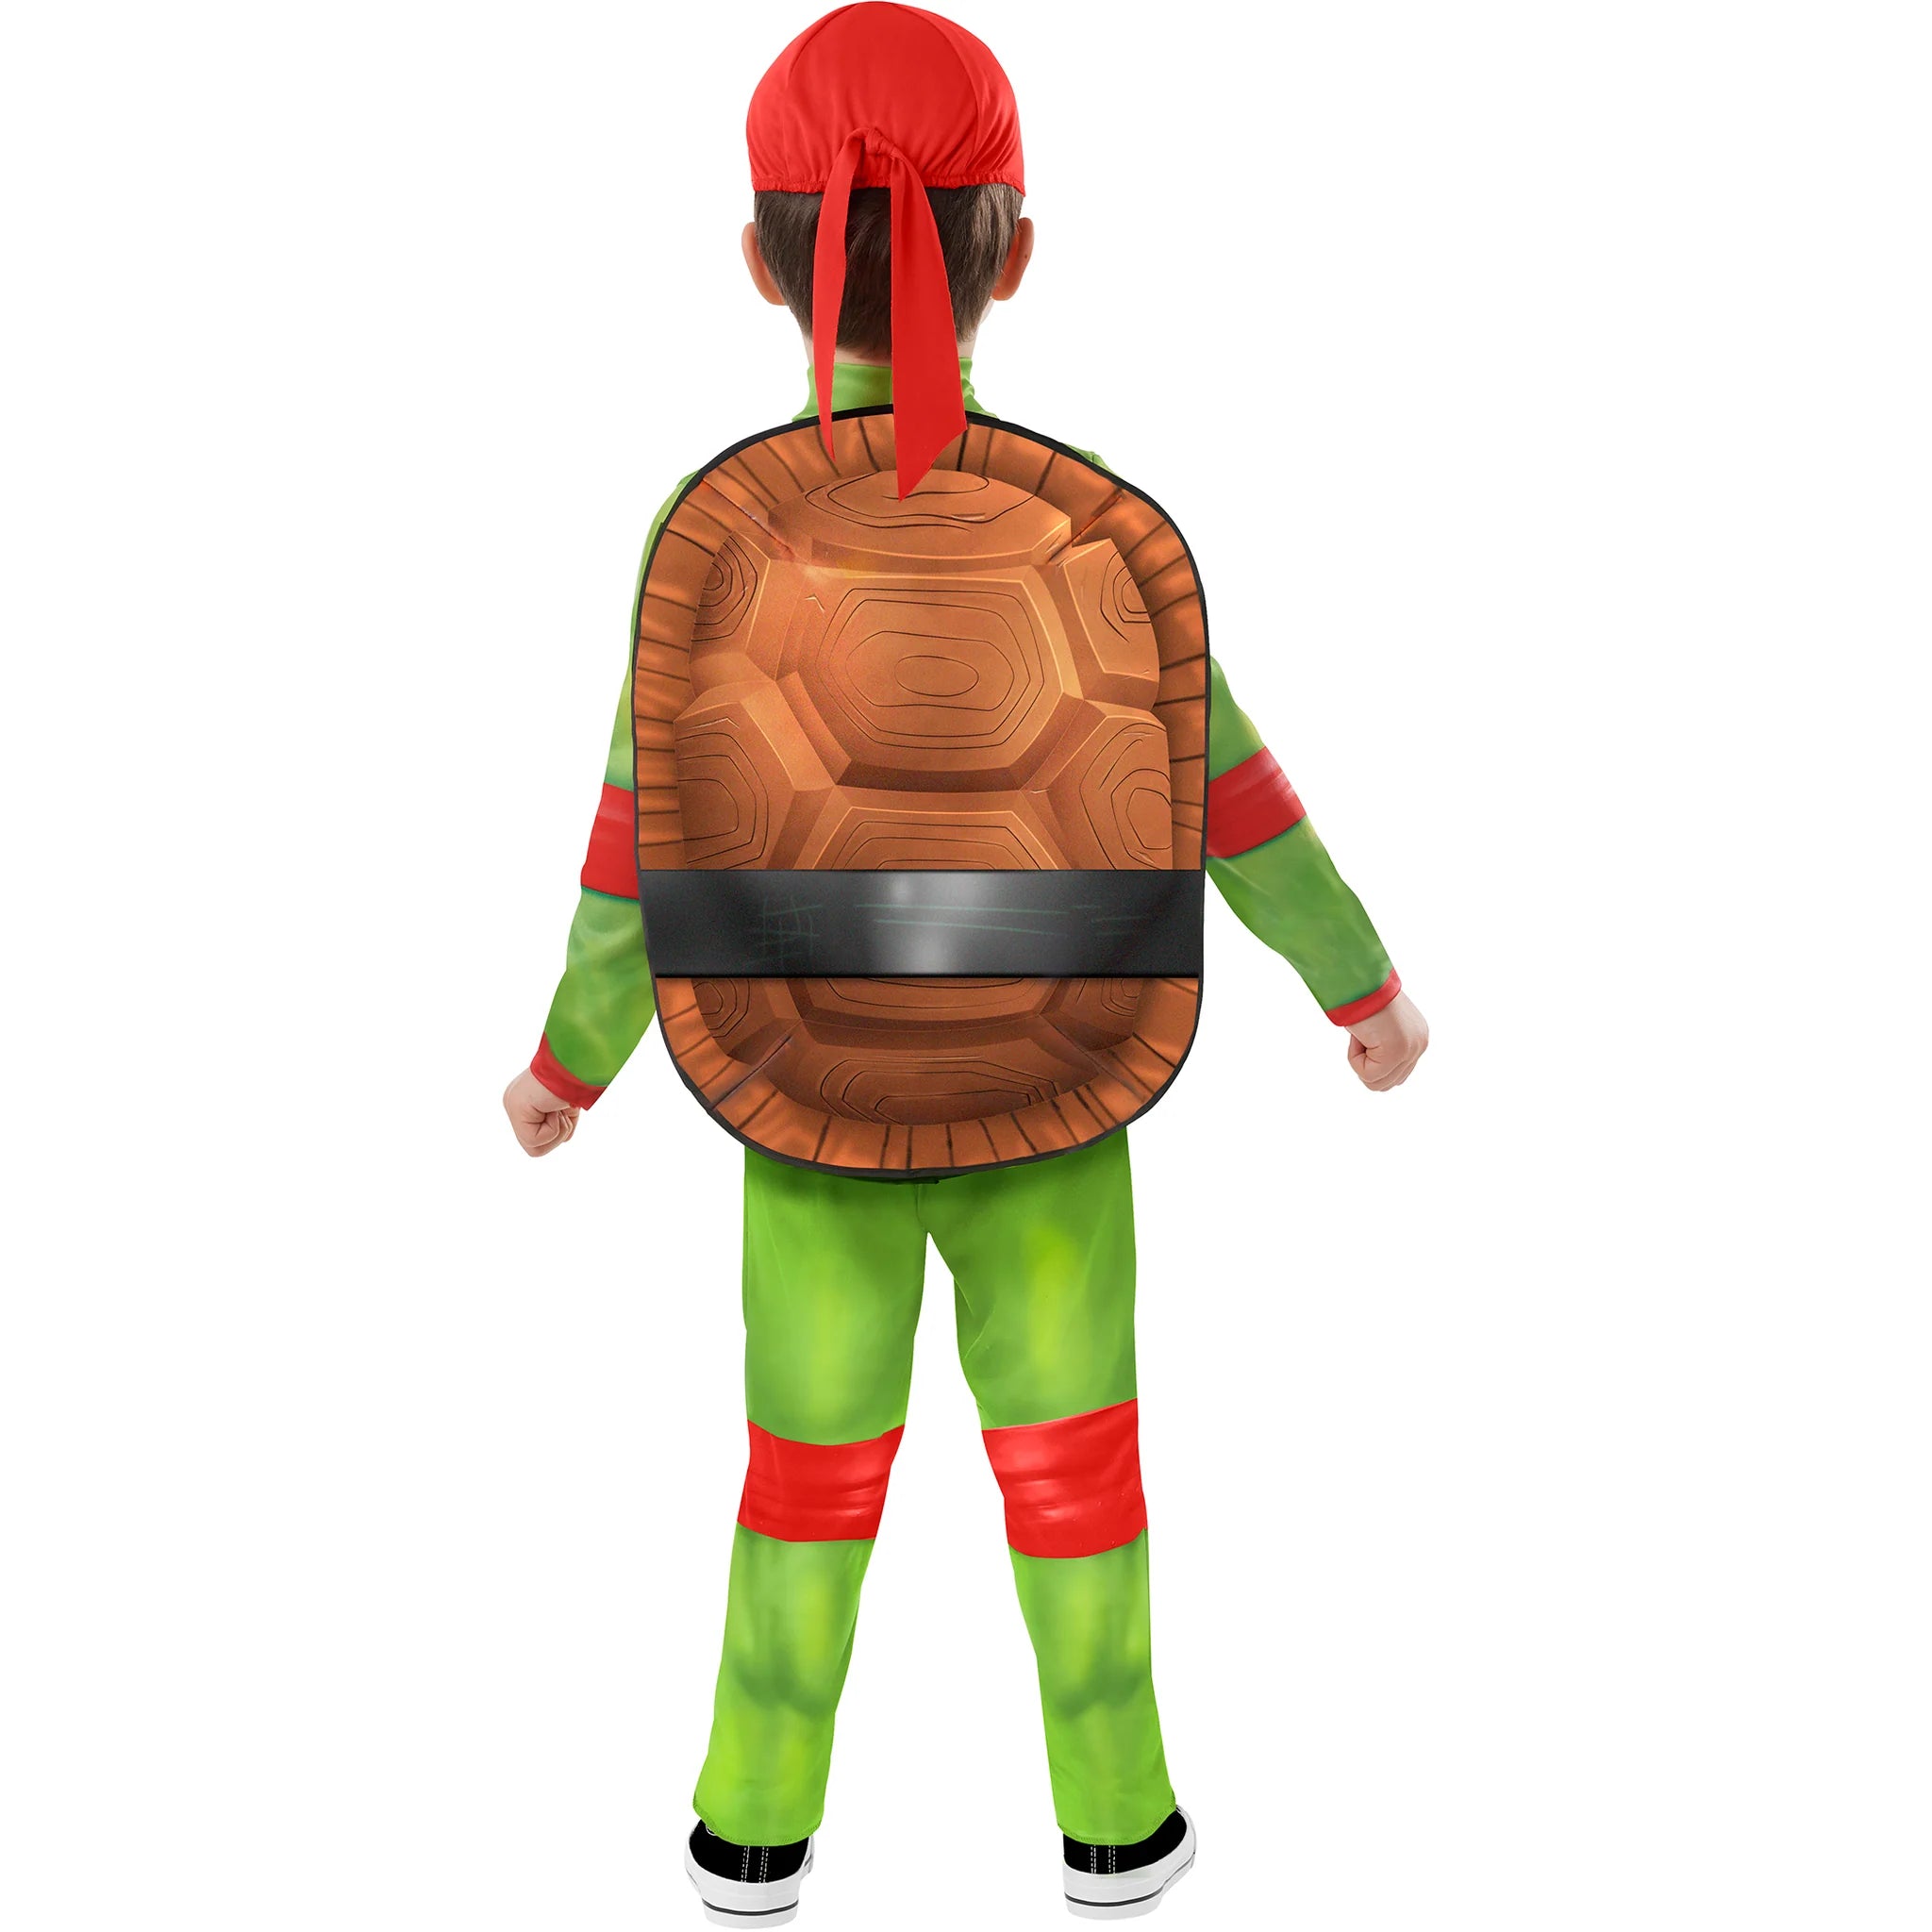 Teenage Mutant Ninja Turtles Mutant Raphael Costume Toddler